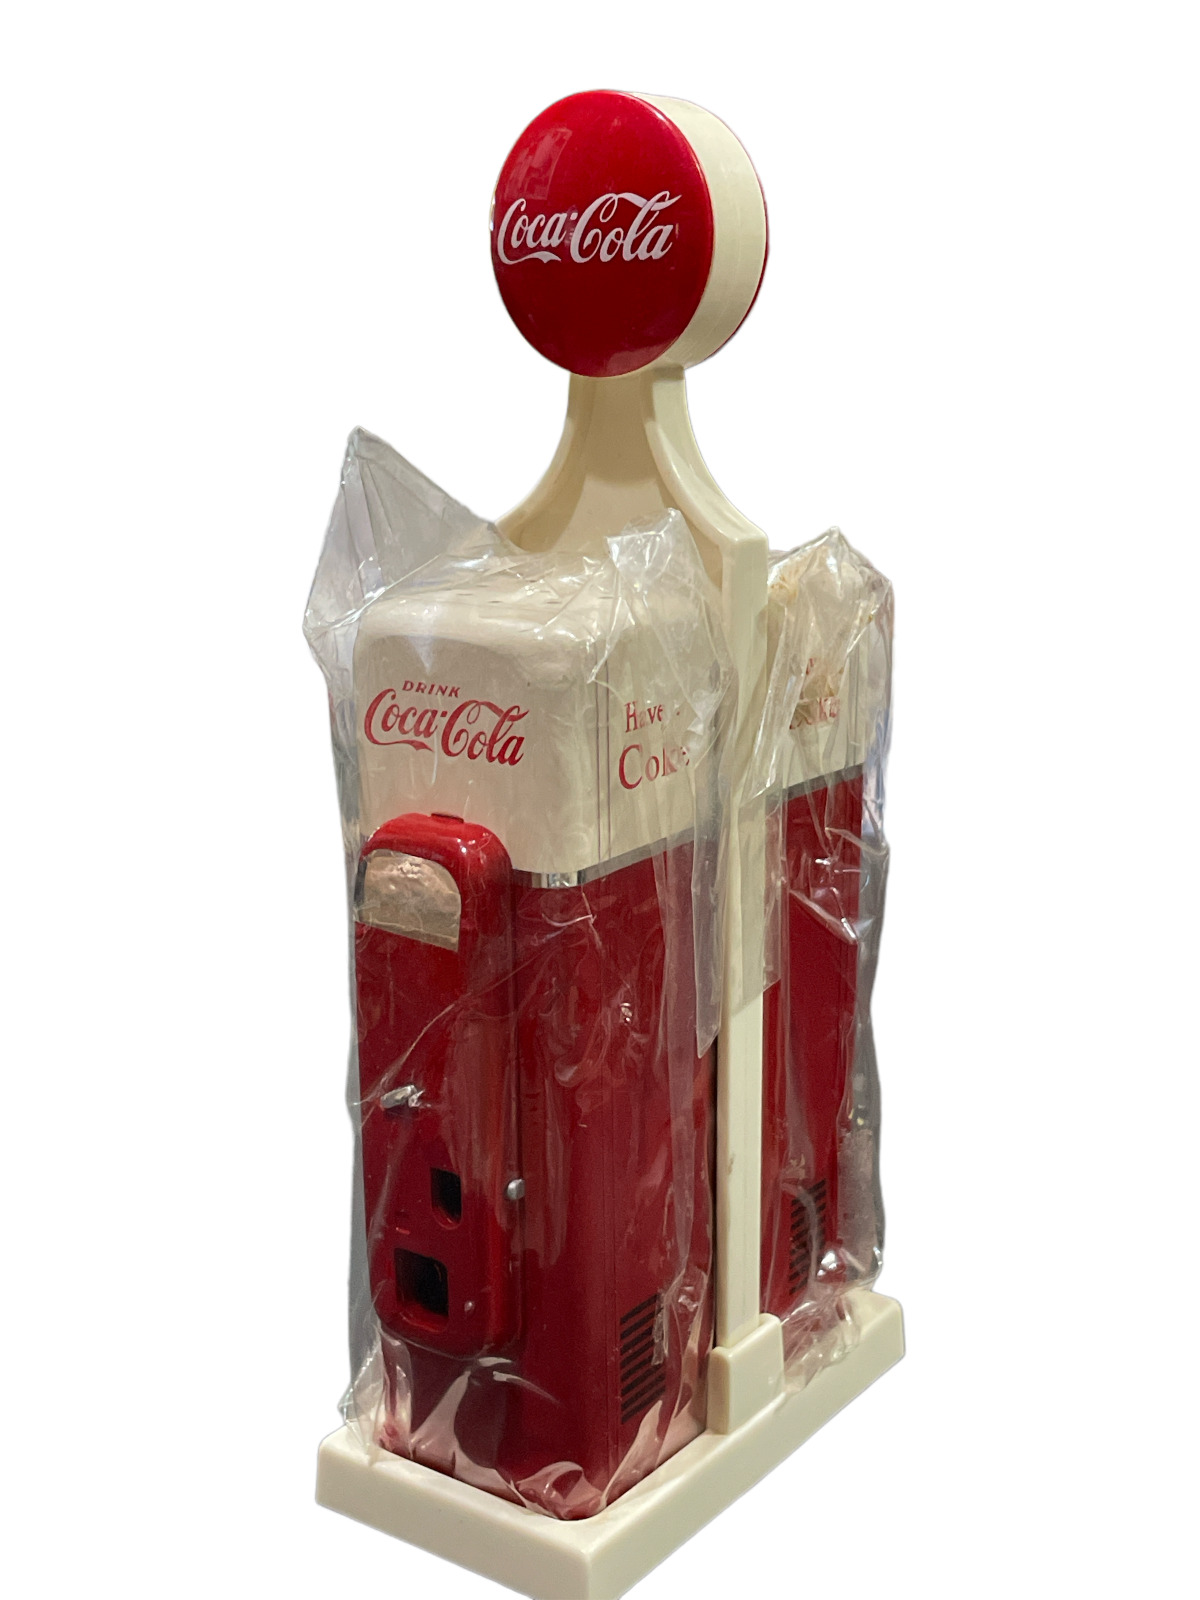 VTG 1993 Original Coca Cola Brand Vender machine Salt and Pepper Shakers